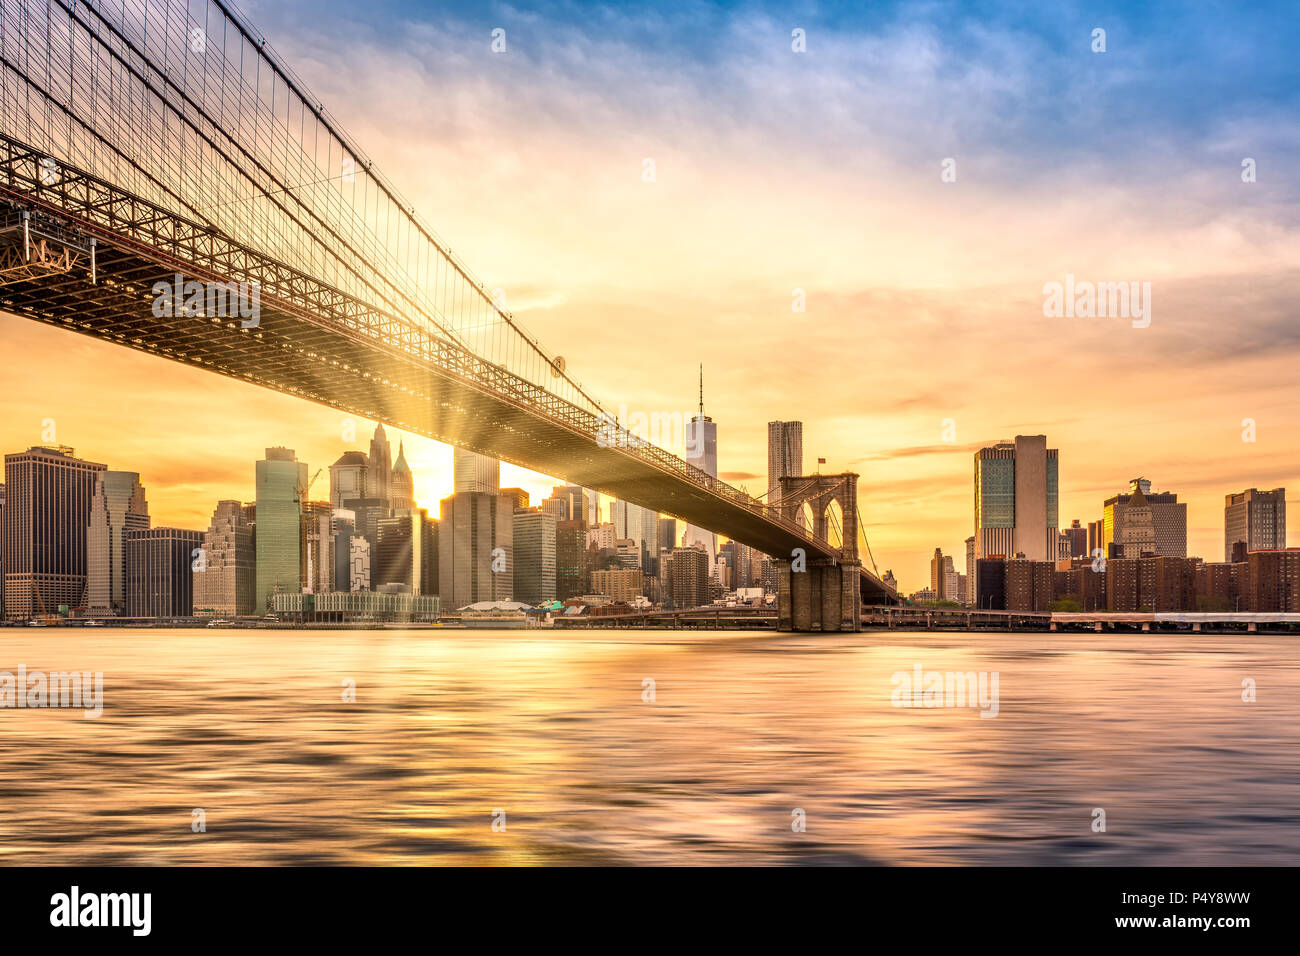 Puente de Brooklyn al atardecer visto desde el puente de Brooklyn Park, en la Ciudad de Nueva York Foto de stock